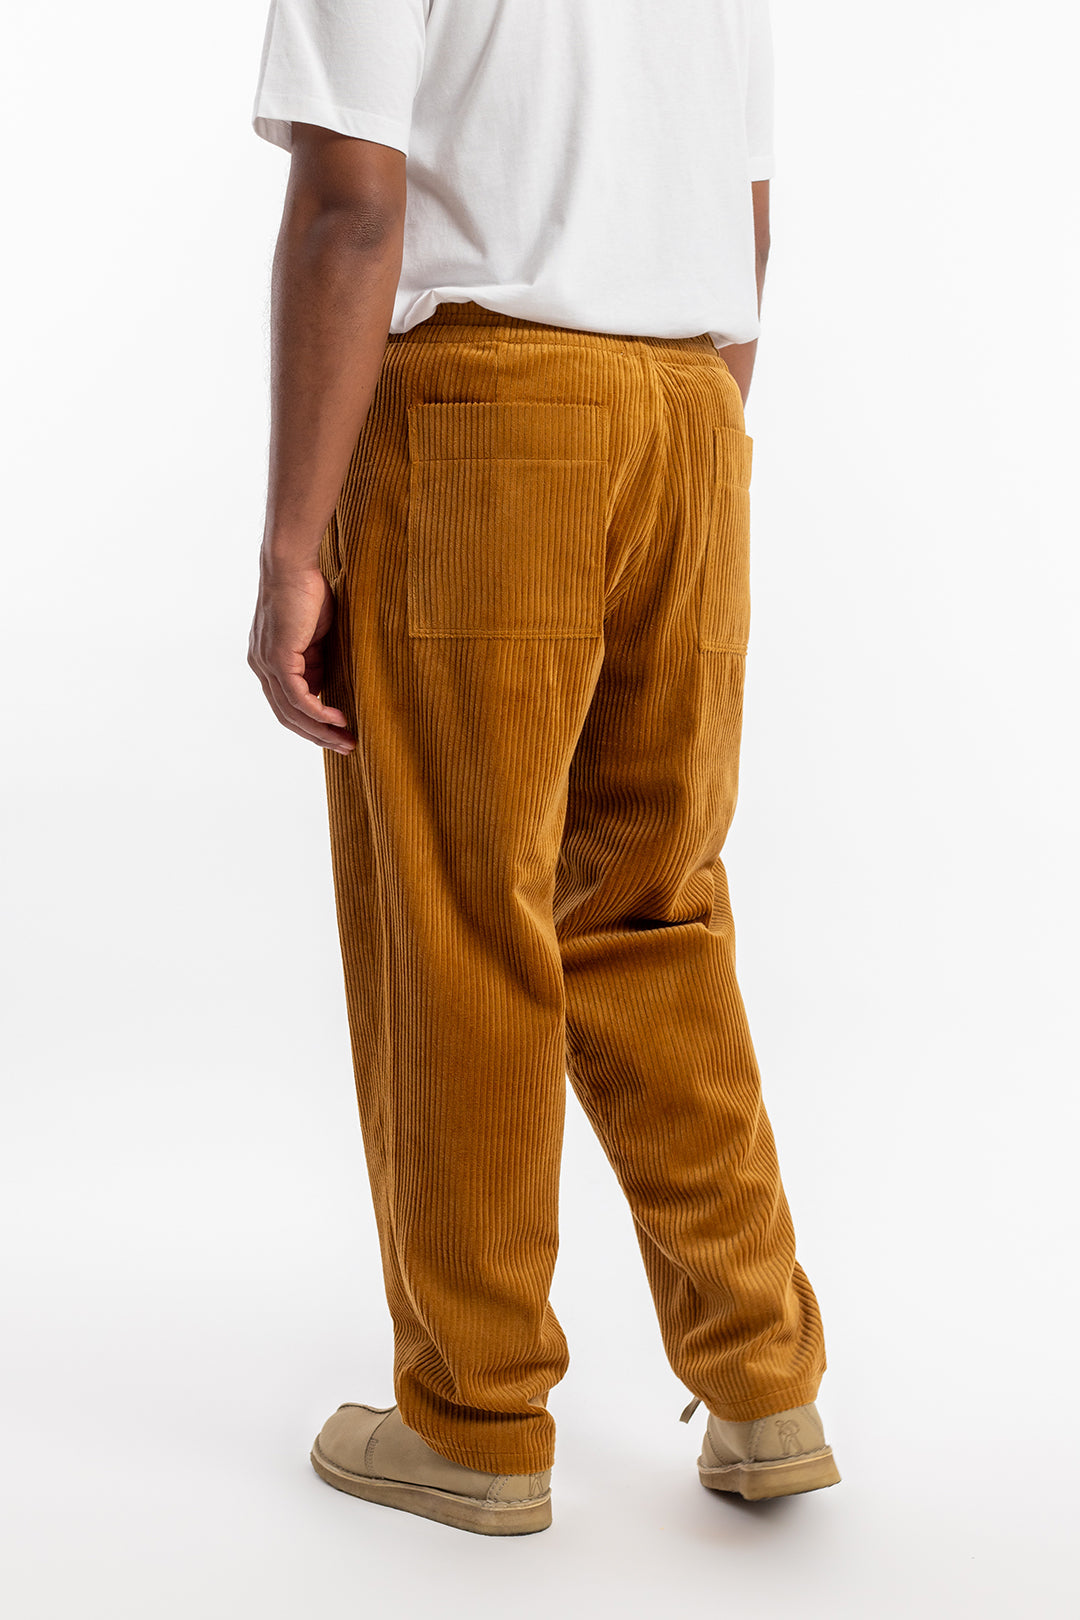 Pantalon en velours côtelé couleur caramel en coton 100% biologique de Rotholz